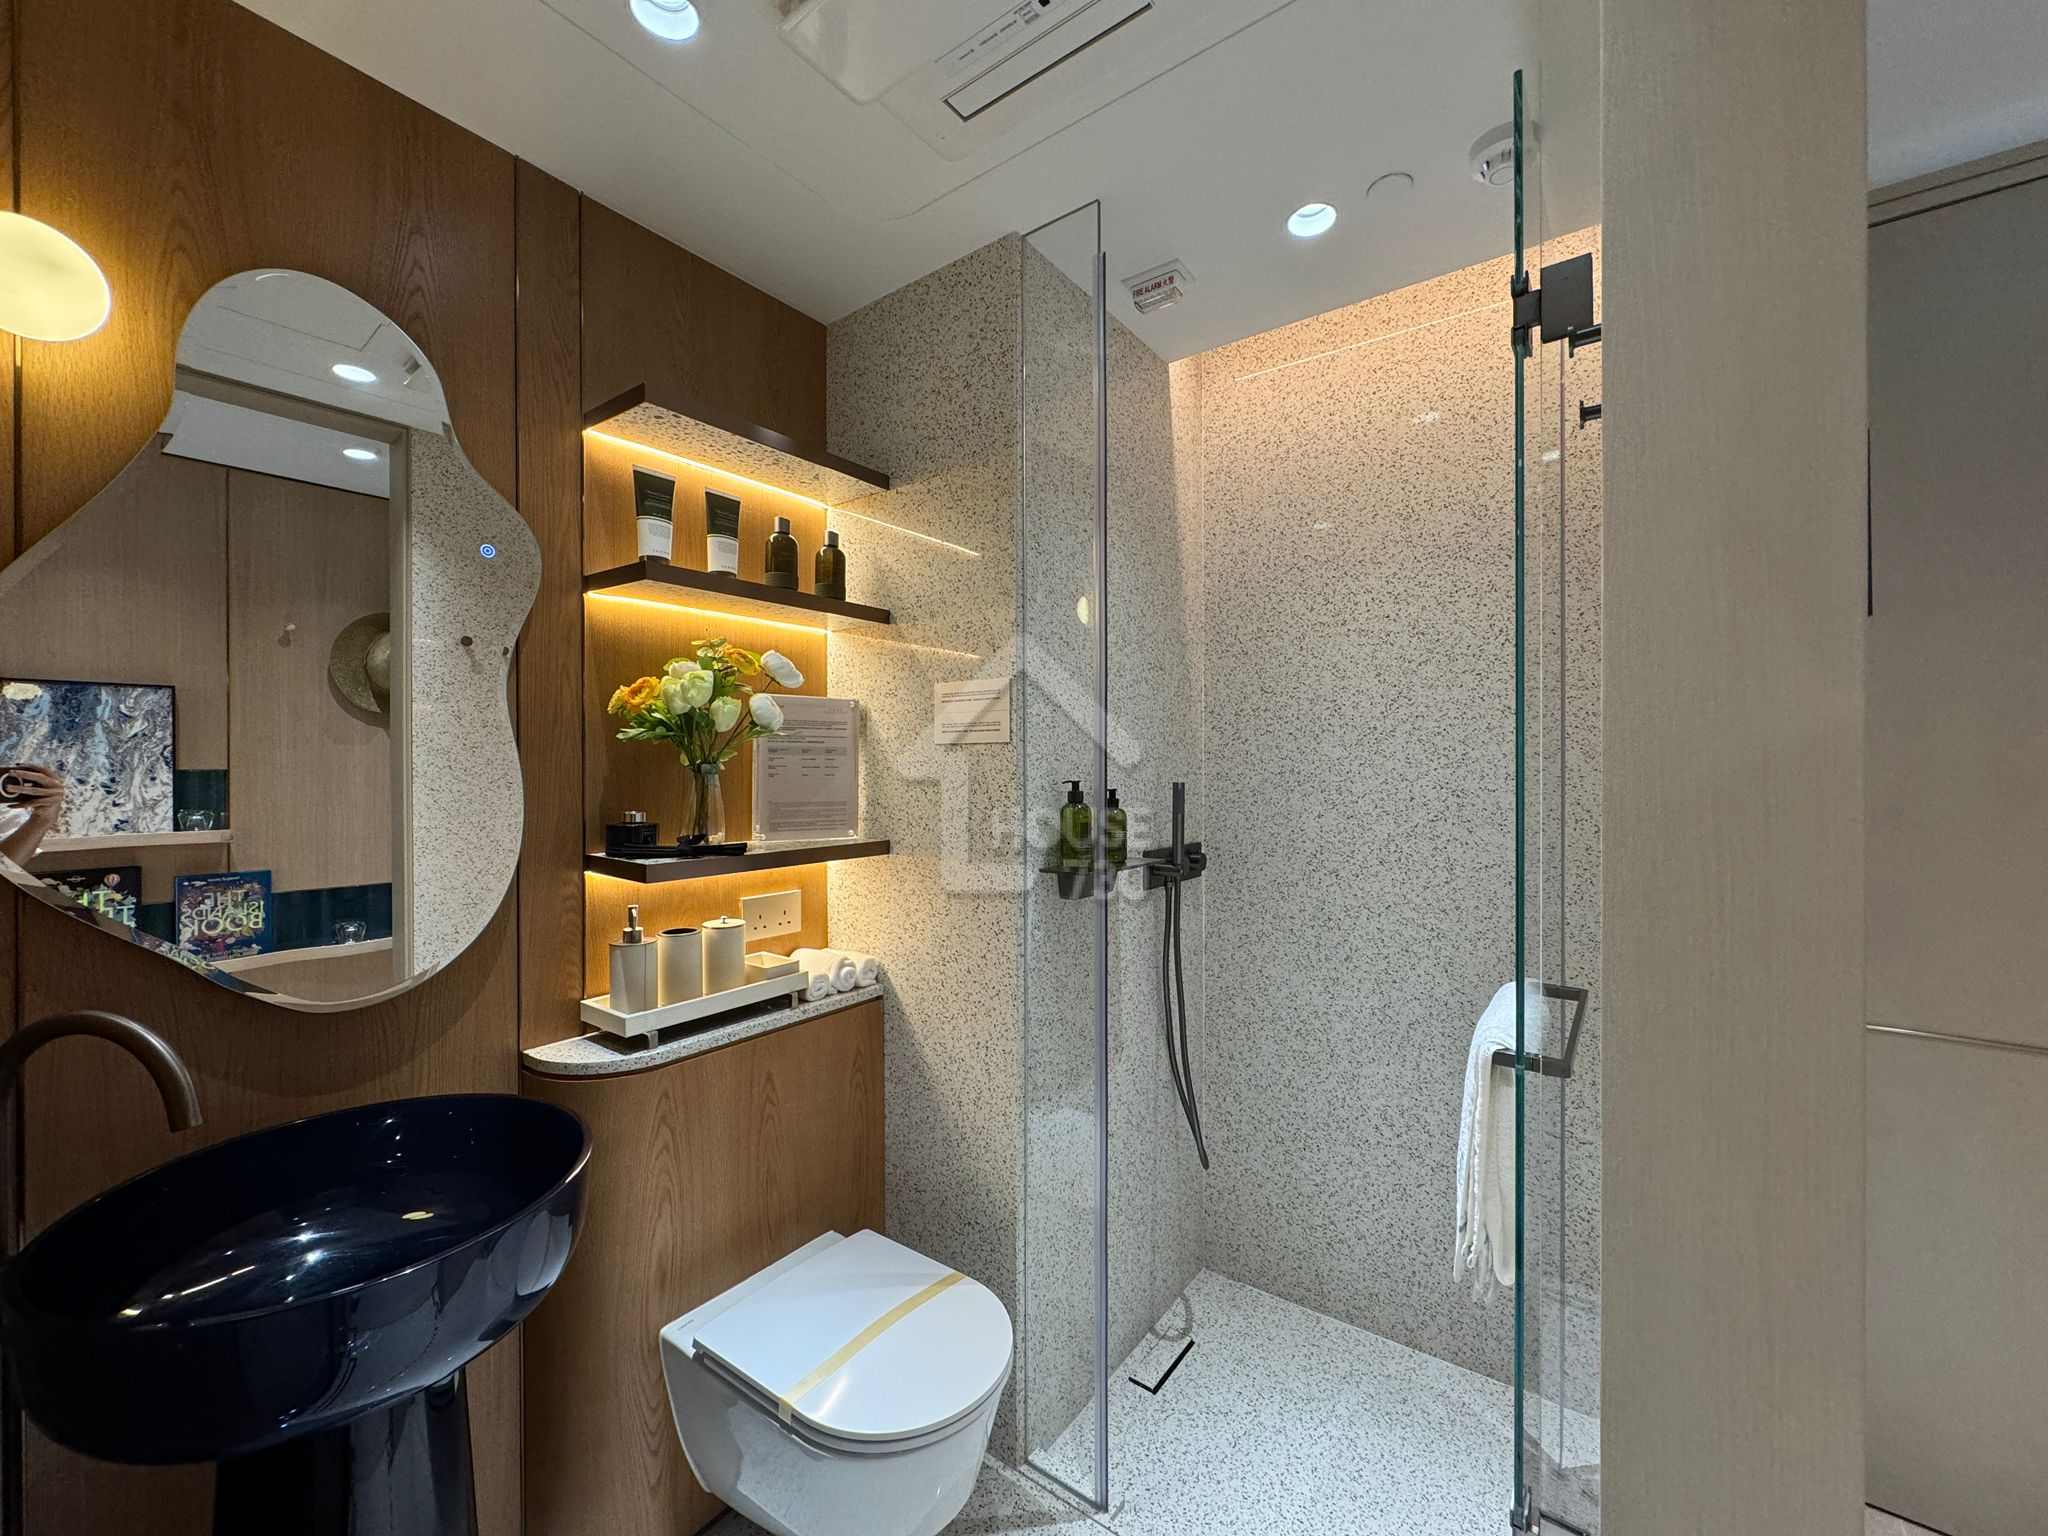 黃金海灣·意嵐經改動示範單位為第 5 座(5B)18 樓 N 單位浴室。